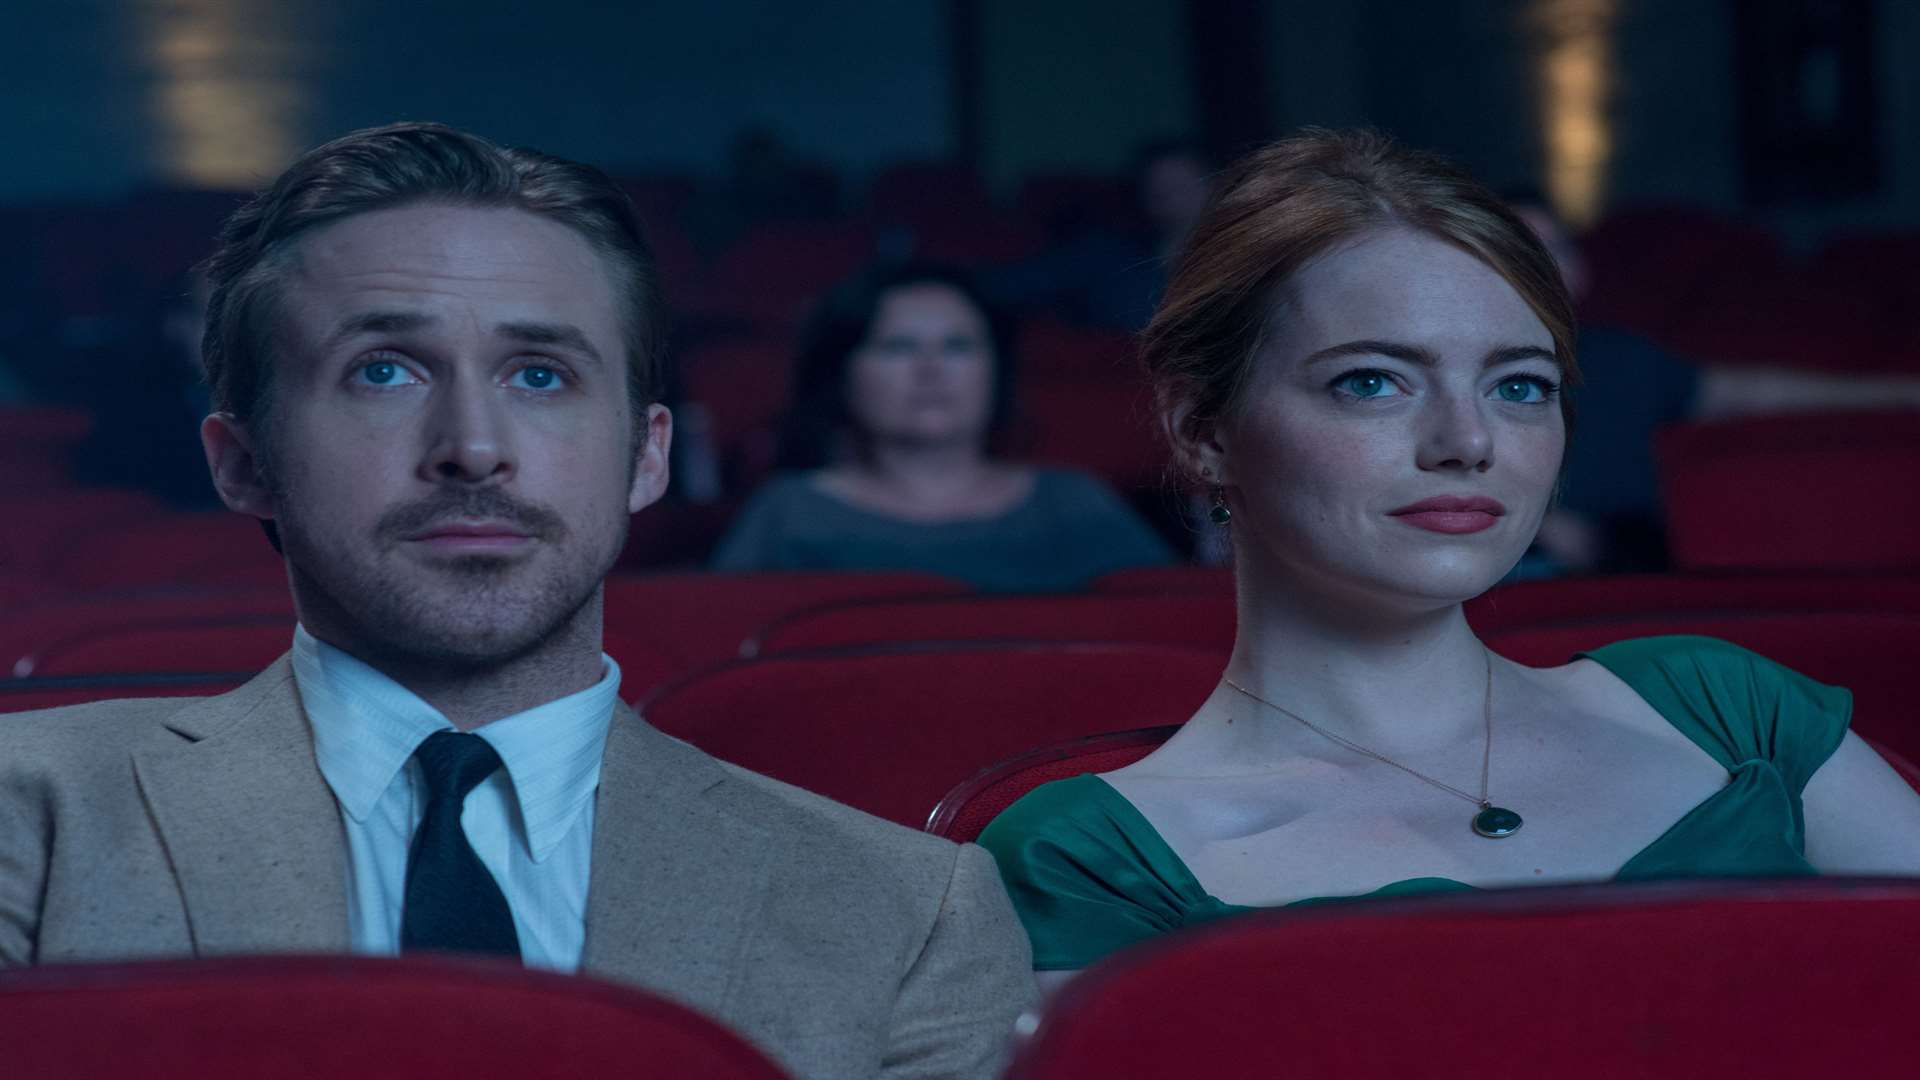 Ryan Gosling and Emma Stone in La La Land Picture: PA/Lionsgate